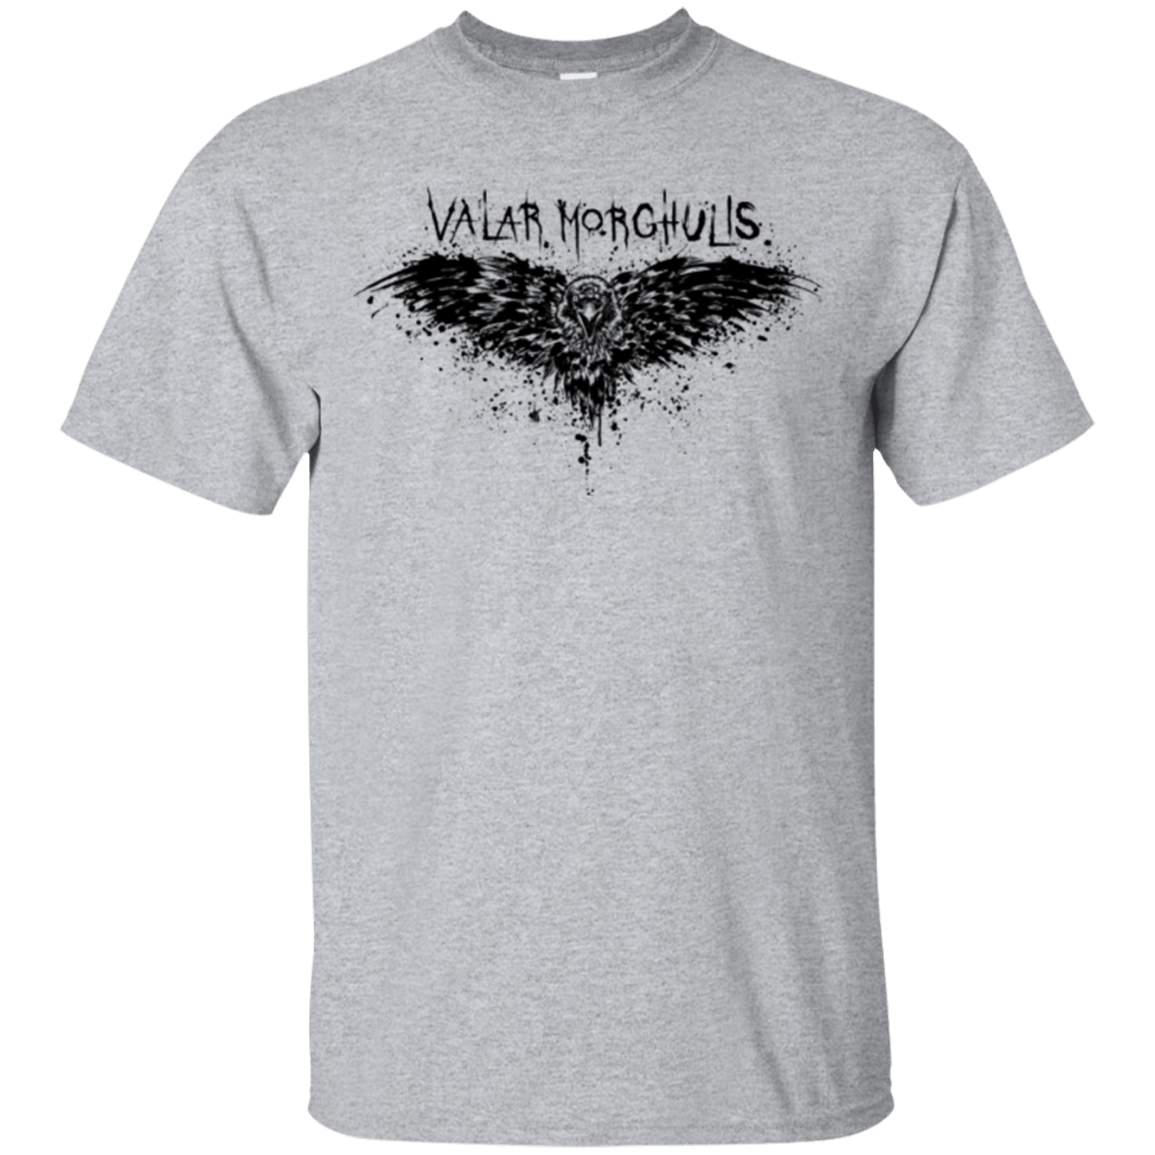 T-Shirts Sport Grey / Small Valar Morghulis T-Shirt